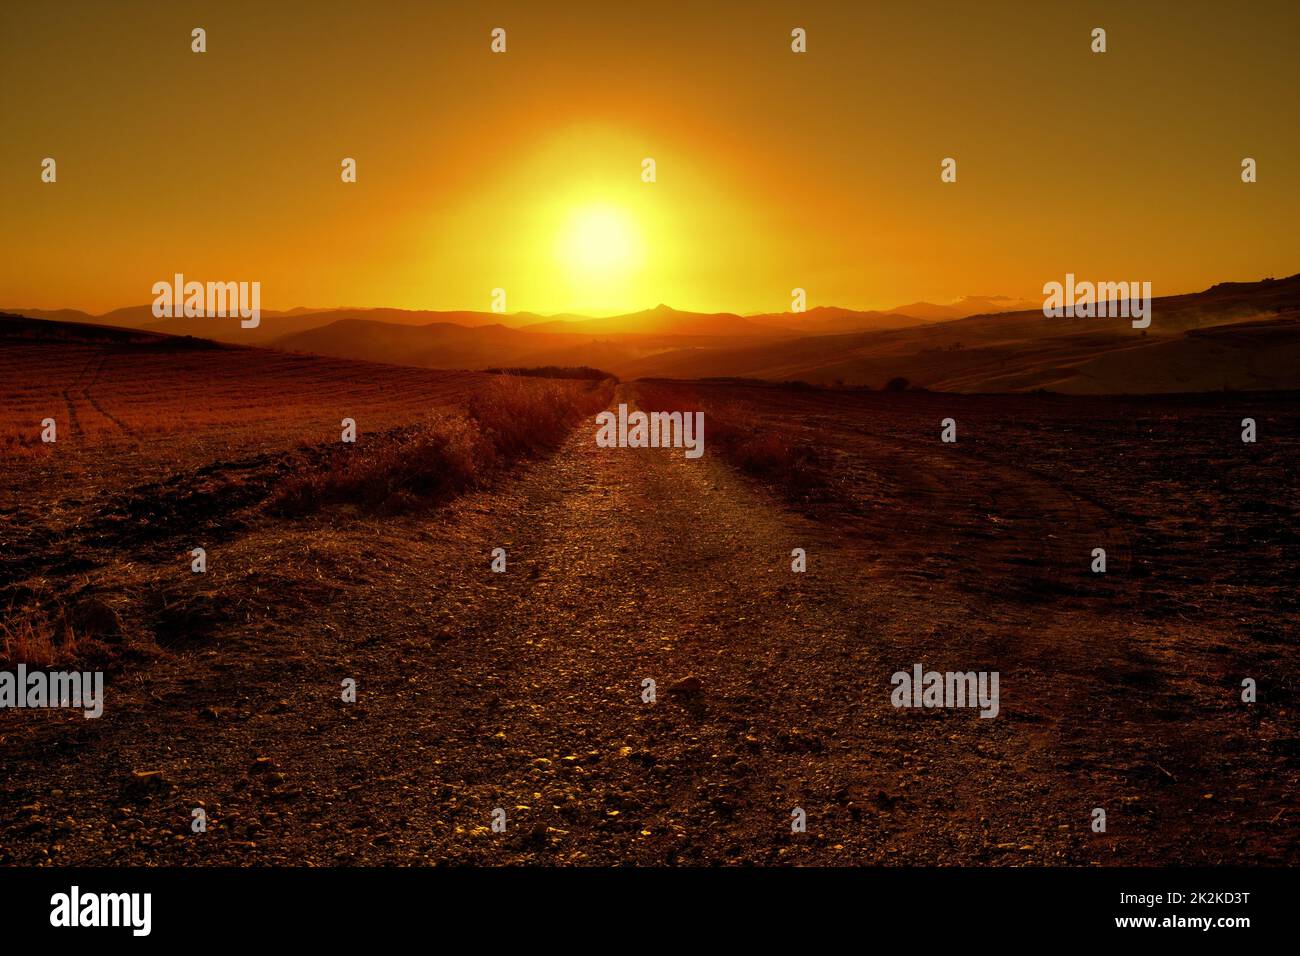 Paysage de Sicile avec route de terre au coucher du soleil, Italie Banque D'Images